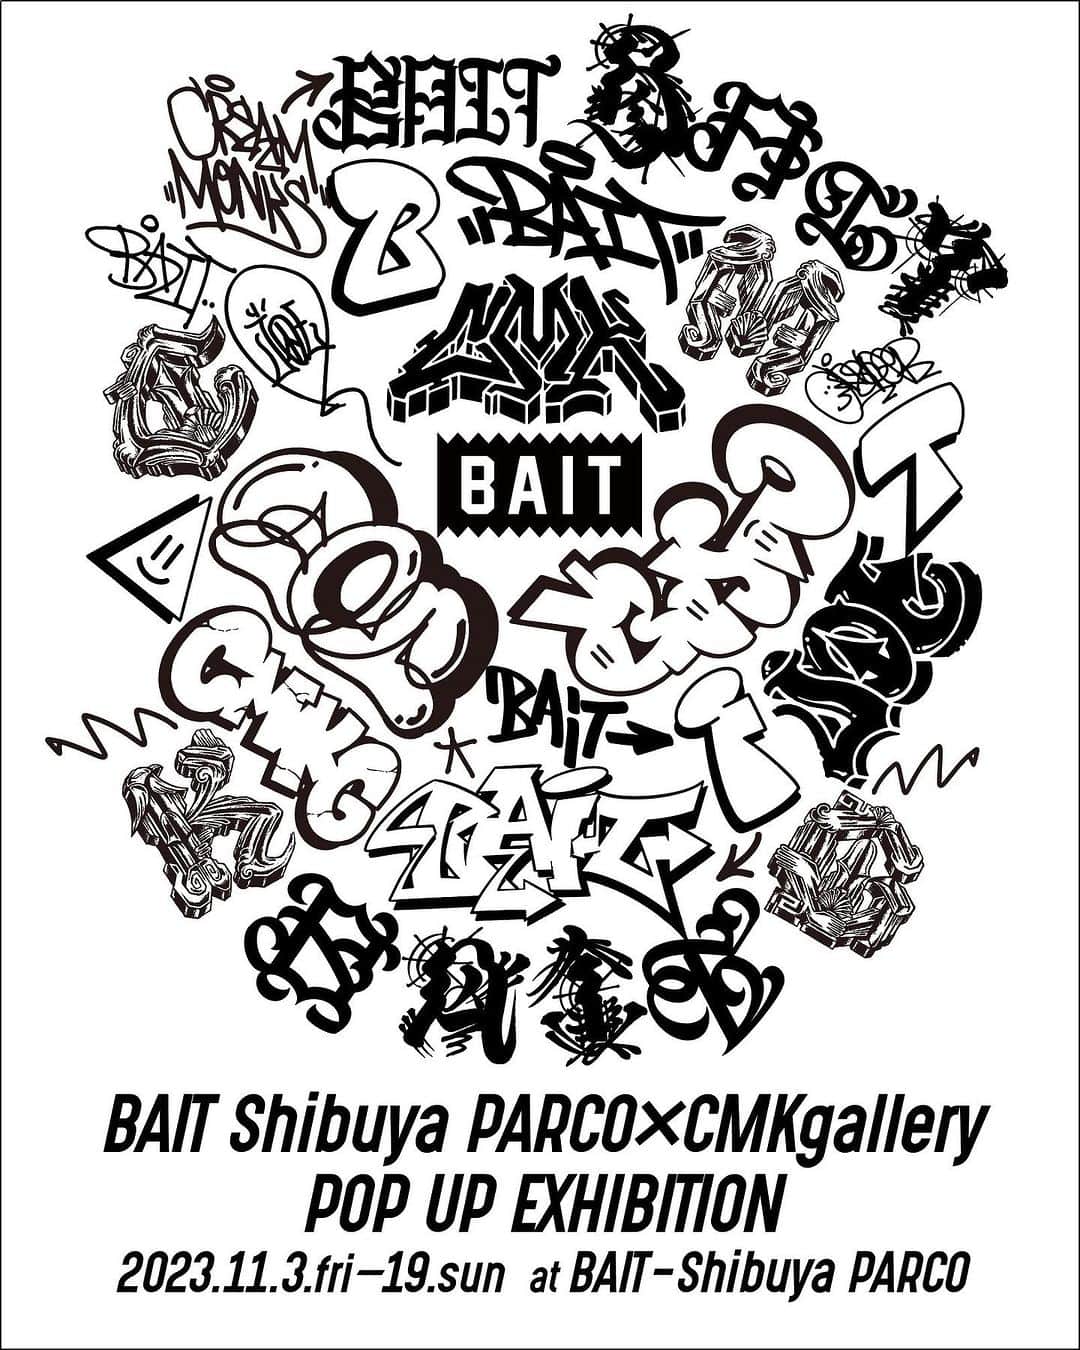 CMKgalleryのインスタグラム：「BAIT SHIBUYA PARCO × CMK gallery POP UP EXHIBITION  BAIT渋谷パルコにて、関西各所に見られる代表的なグラフィティを手掛けるCMK galleryよりCASPER氏とJOE氏によるPOP UP EXHIBITIONを2023年11月3日（金・祝）より開催いたします。  BAITを取り巻く様々なカルチャーの中の1つであるアートを切り口にCMK galleryは昨年、阪神タイガースとBAITコラボレーションアパレルのデザインも手掛けたことから、東京では初となるPOP UP EXHIBITIONがBAIT渋谷パルコにて開催決定となりました。  POP UP EXHIBITIONでは、グラフィティアーティストCASPER氏とJOE氏による新作アートワークスの展示販売に加え、2名によるBAITが持つFUN、UNIQUE、HYPEのキーワードから仕上げられたグラフィティが落とし込まれたコラボレーションTシャツ、手ぬぐいがラインナップし、さらにBAIT限定カラーとなるソフビも限定販売します。  また、会期初日となる11月３日（金・祝）には今回のPOP UP EXHIBITIONを祝し、ローンチイベントを開催いたします。 BAIT渋谷パルコ店内にて、CASPER氏とJOE氏によるライブペインティングに加え、CMK galleryと親交の深いDJ QuietstormによるDJタイム、ケータリングでは高円寺にて世界の高品質クラフトビールをインポートする「Drinkuppers/ドリンクアッパーズ」より希少でハイクオリティなクラフトビールを提供いたします。  ― BAIT SHIBUYA PARCO × CMK gallery POP UP EXHIBITION LAUNCH EVENT ―  ■開催日時：2023年11月3日（金・祝） 16：00～21：00 ■住所：〒150-8377 東京都渋谷区宇田川町15-1 渋谷パルコ ■フロア・ショップ名：5階 BAIT  ― BAIT SHIBUYA PARCO × CMK gallery POP UP EXHIBITION ―  ■開催日時：2023年11月3日（金・祝）～11月19日（日） ■住所：〒150-8377 東京都渋谷区宇田川町15-1 渋谷パルコ ■フロア・ショップ名：5階 BAIT ※11月4日（土）、5日（日）それぞれ13：00～17：00にCASPER氏、JOE氏が駐在します。  #baitme #bait #baitjapan #ベイト #cmk #cmkgallery #graffitiart #osakagraffiti #streetart #casper #joe」